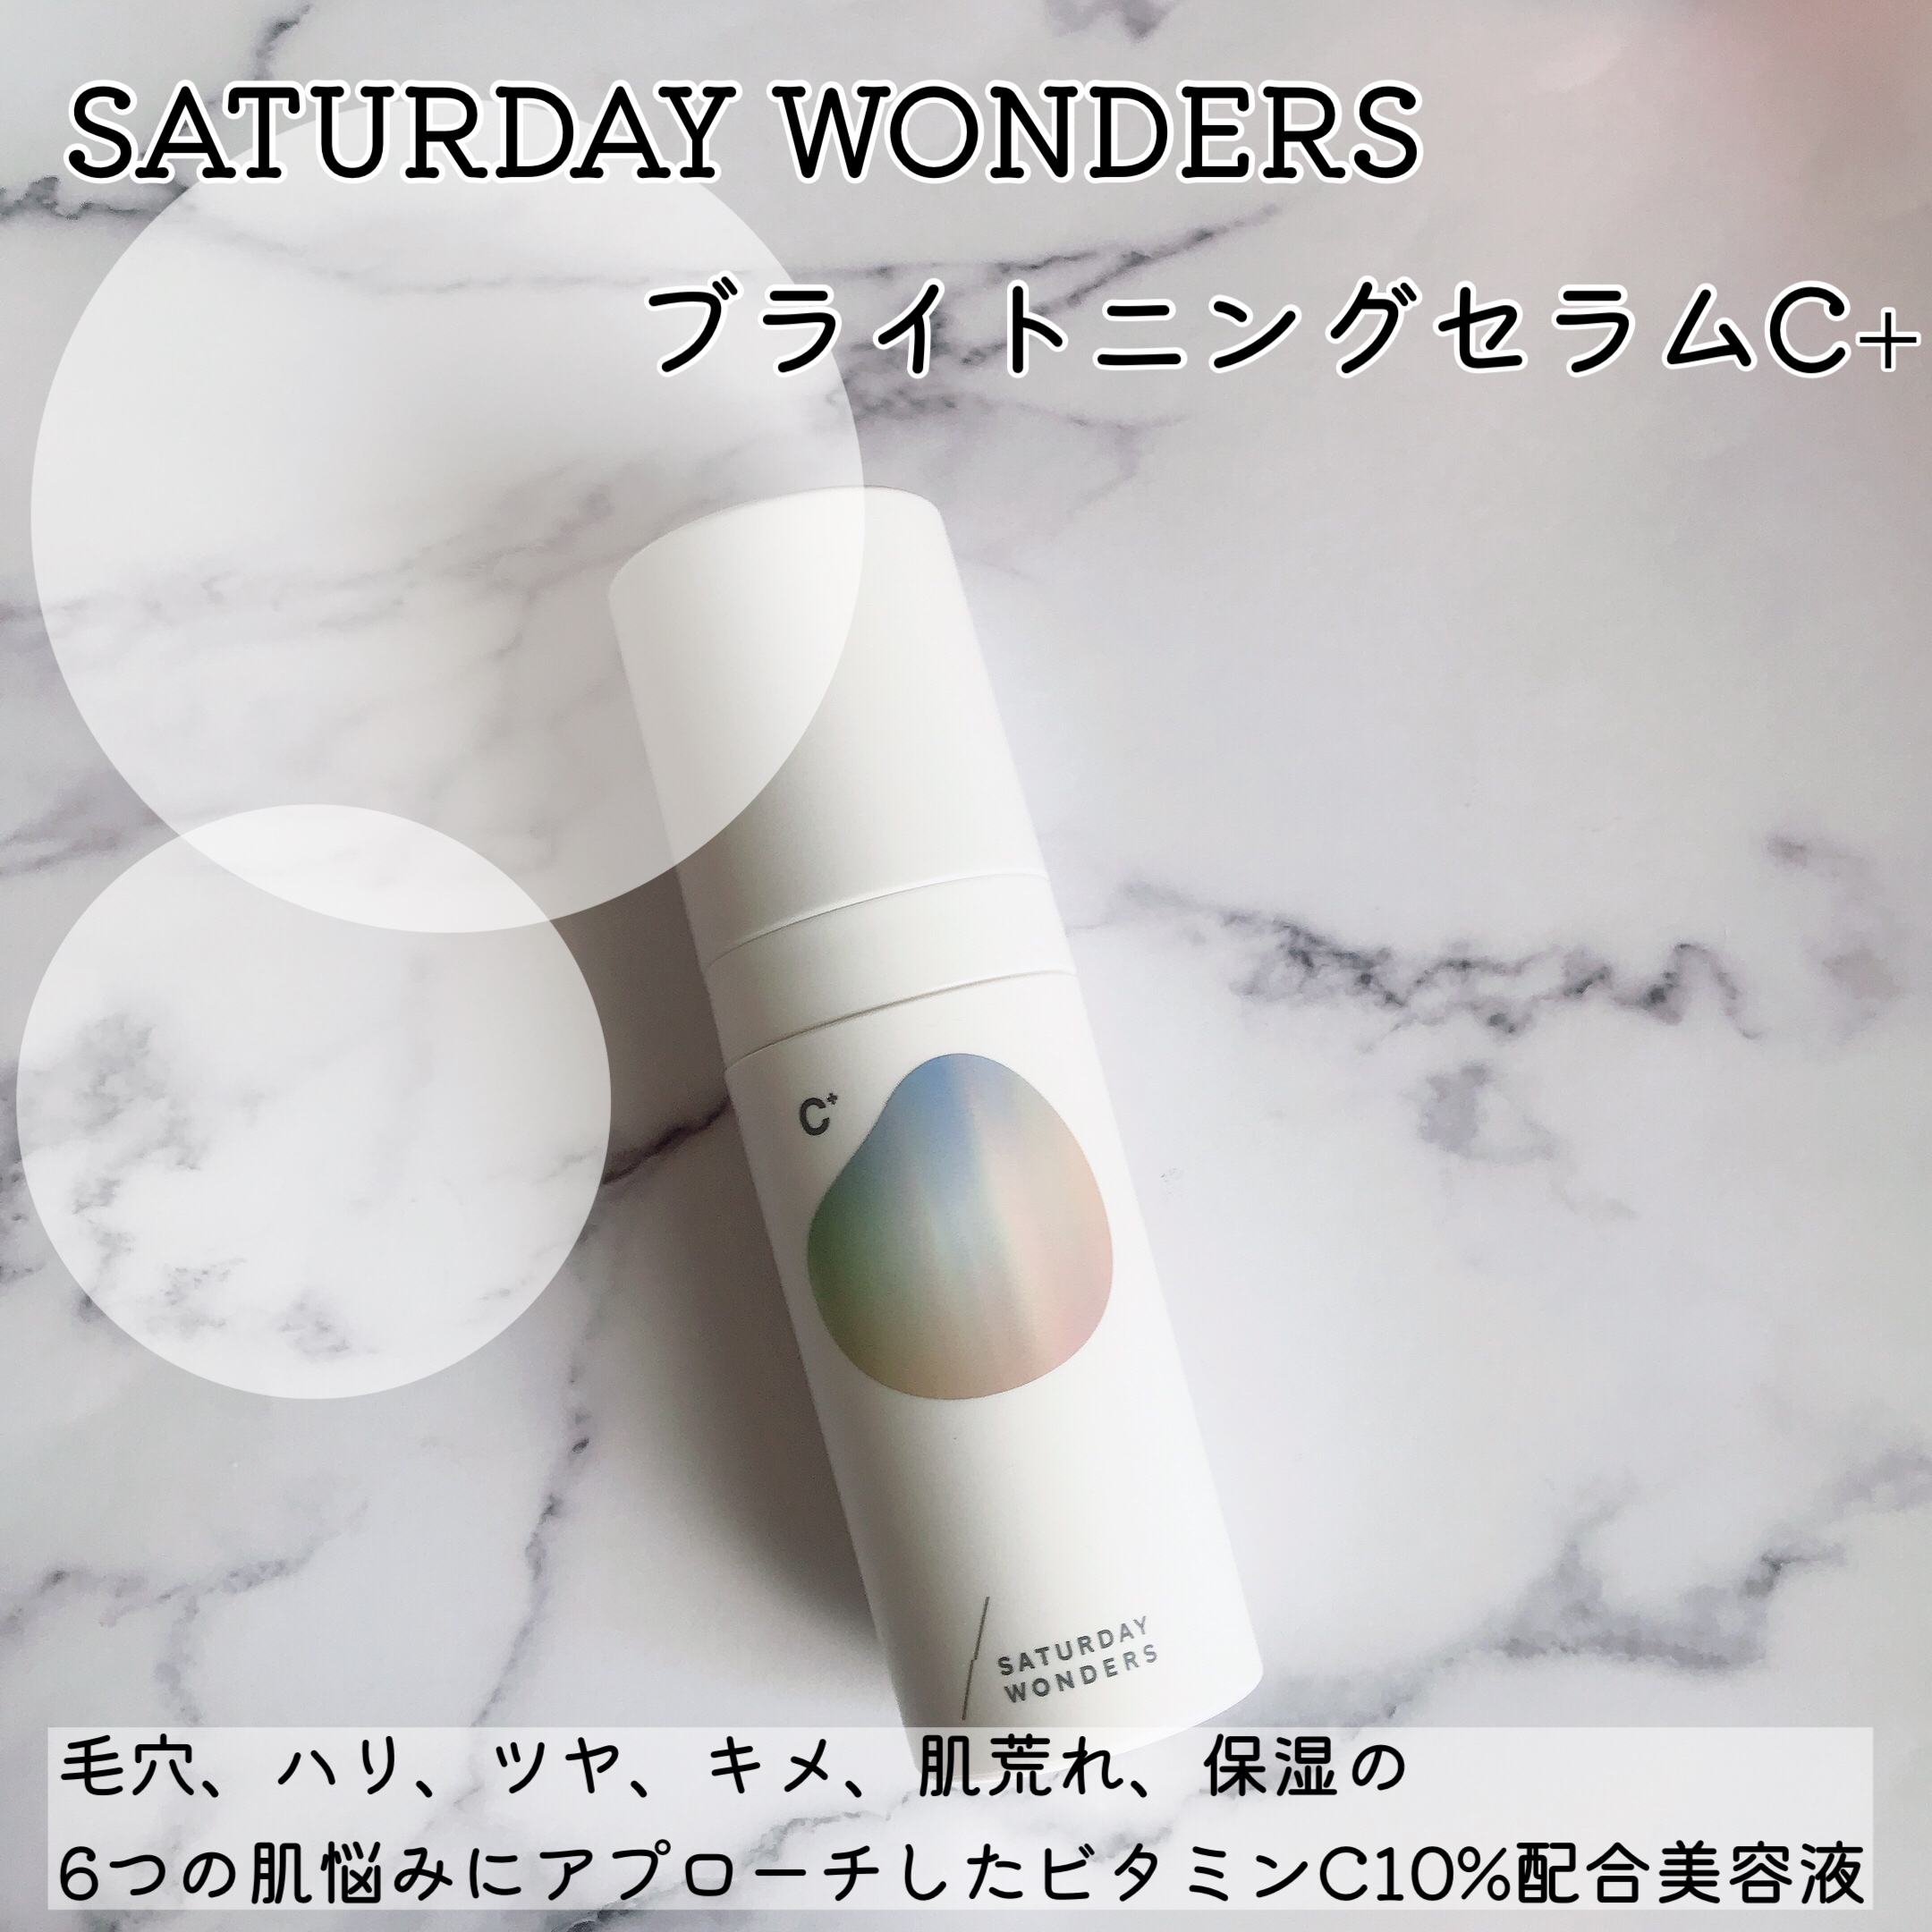 Saturday Wonders(サタデーワンダーズ) ブライトニングセラムC＋を使ったMarukoさんのクチコミ画像1